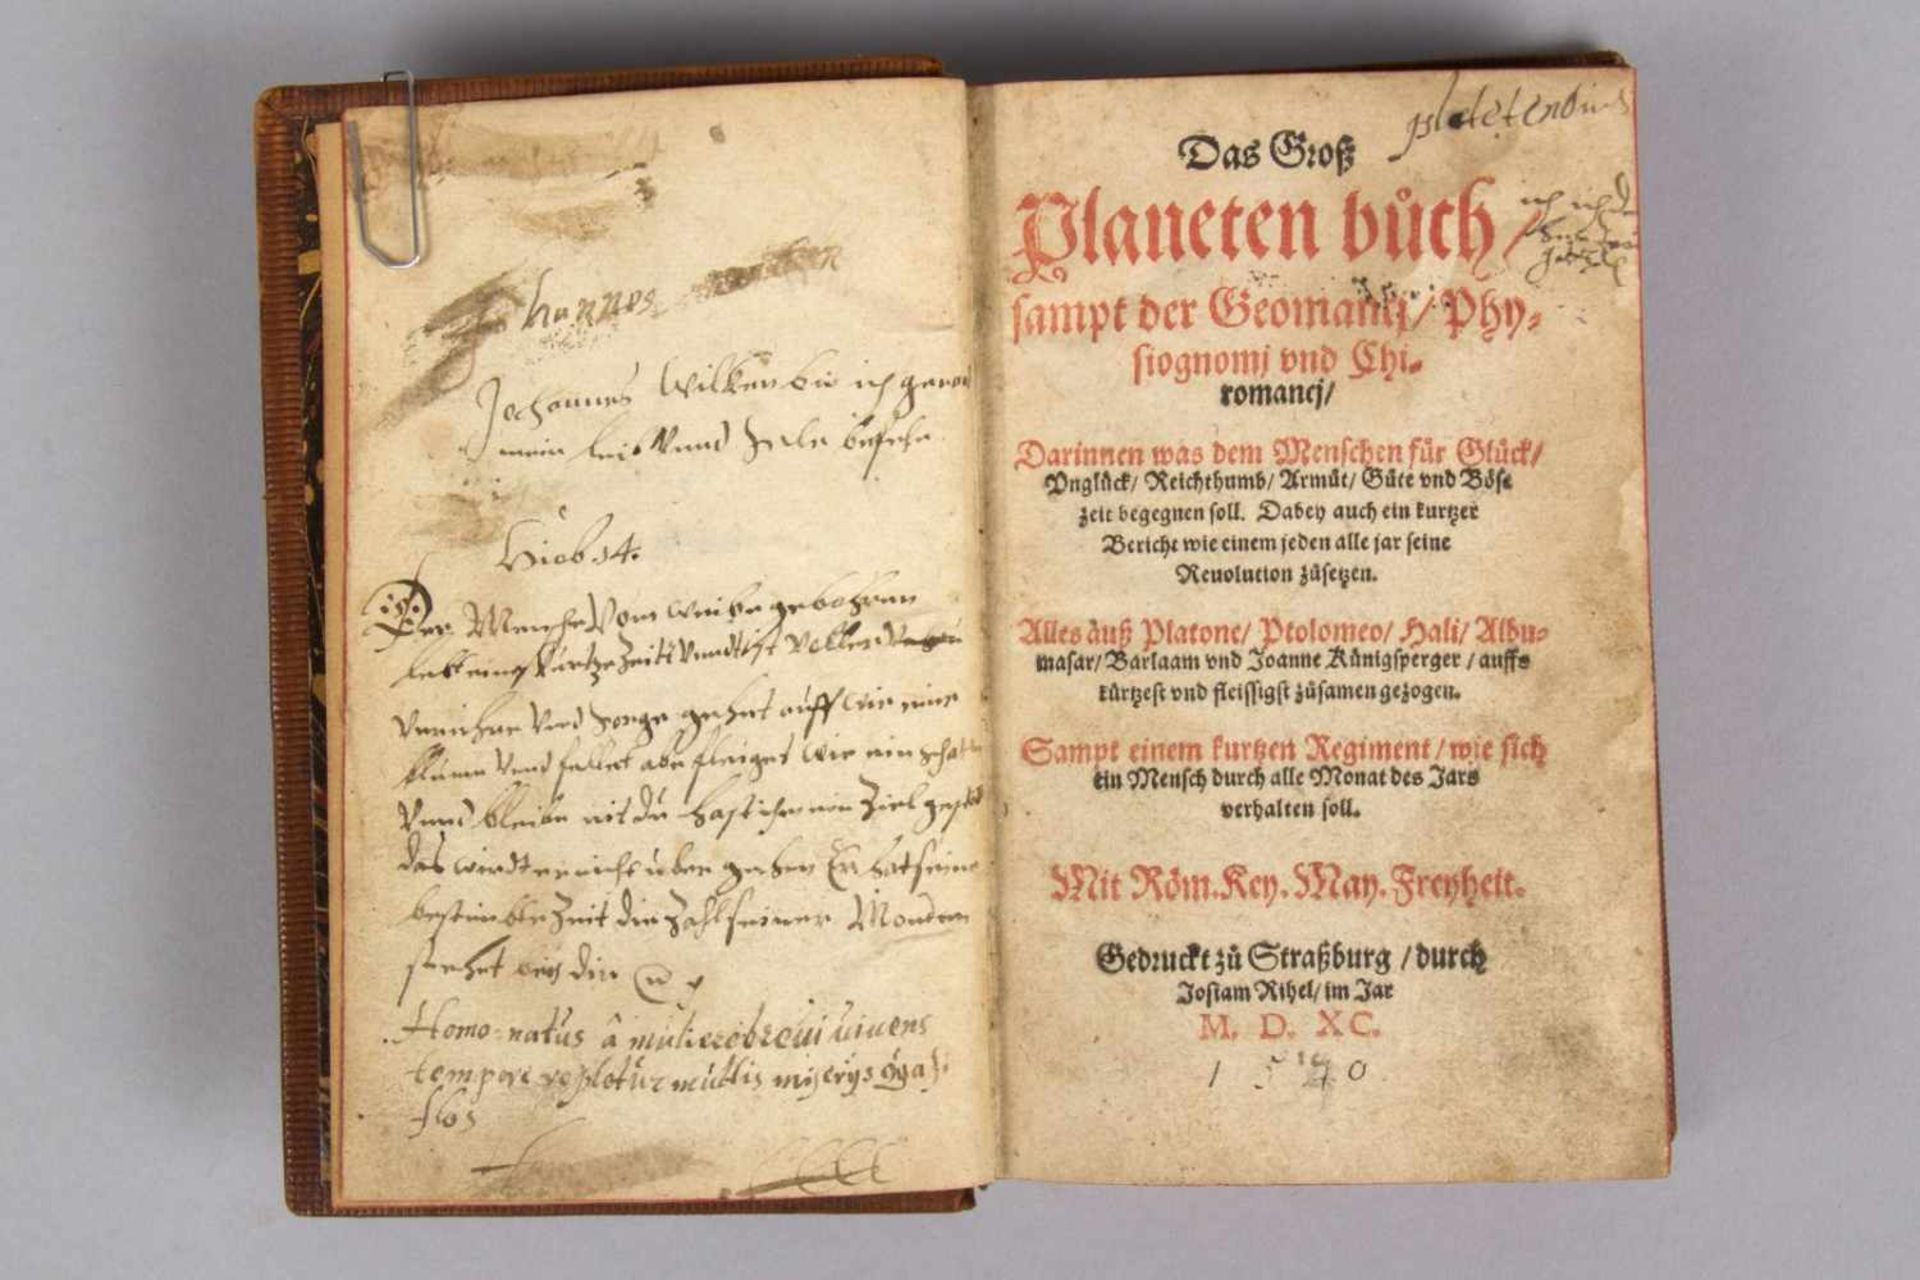 Daß Groß Planeten Buch sampt der Geomanci/Physiognomi und Chiromanci... Strassbg., Rihel,1590.